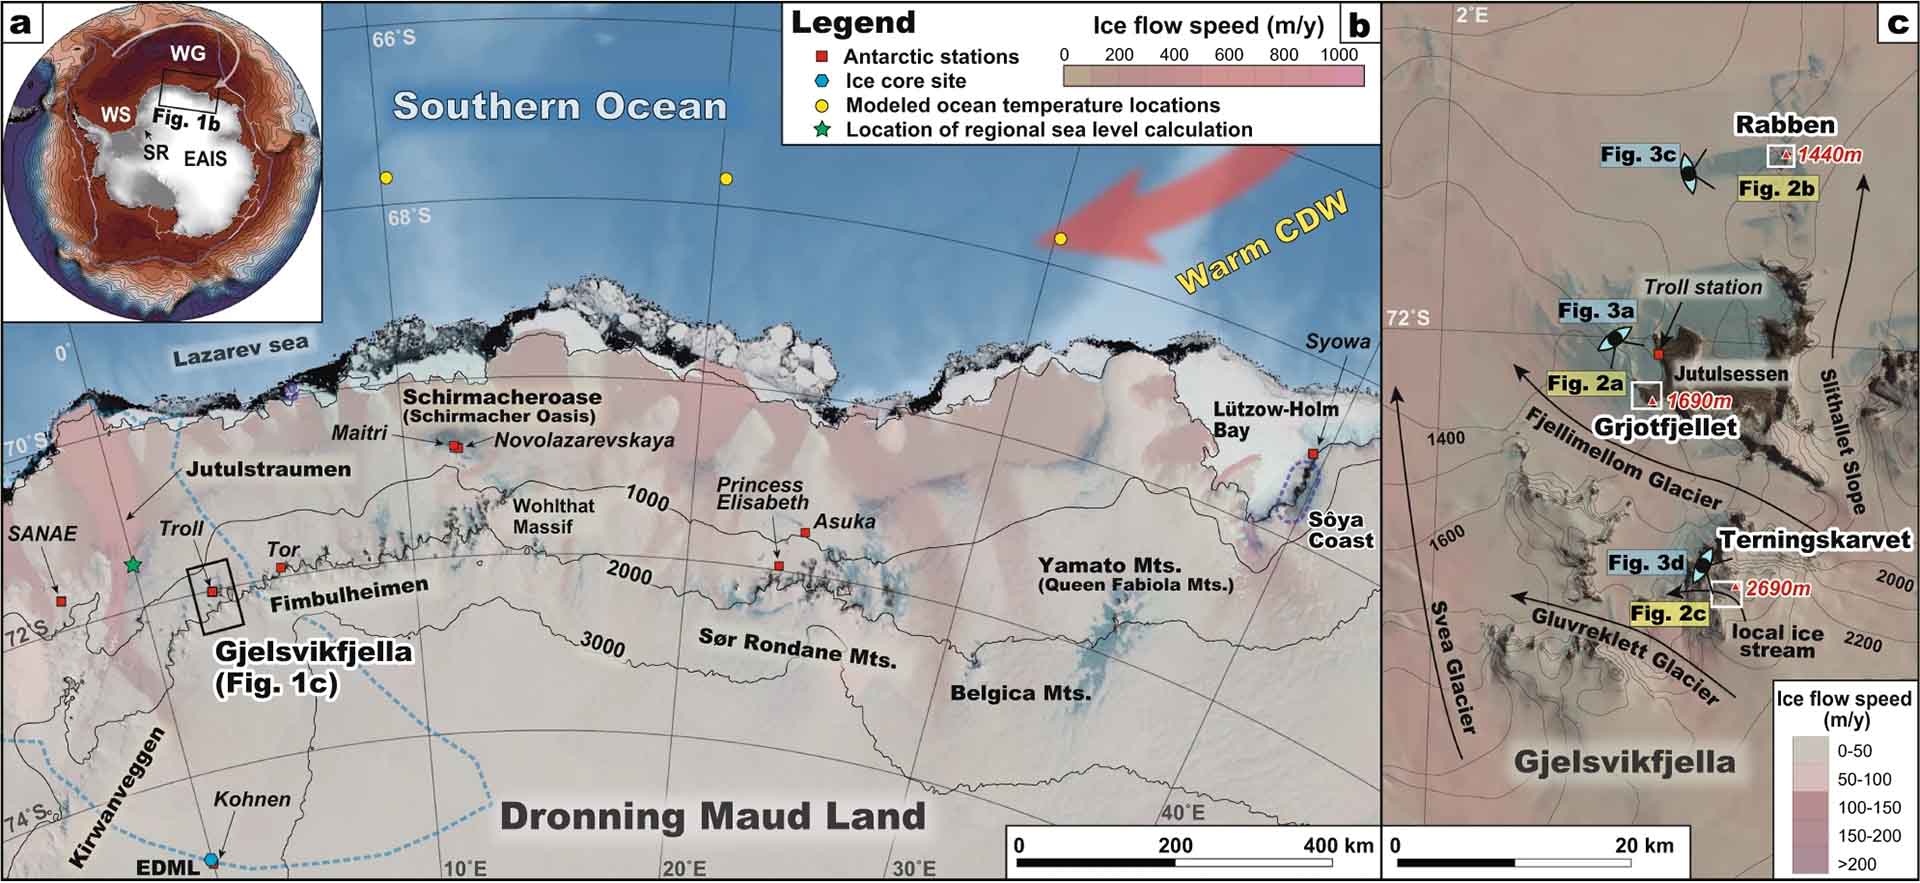 Área de estudio. Nivel alto regional del mar desencadenó el adelgazamiento de la capa de hielo del Holoceno en la costa de Dronning Maud Land, Antártida Oriental / Imágen:Communications earth & environment